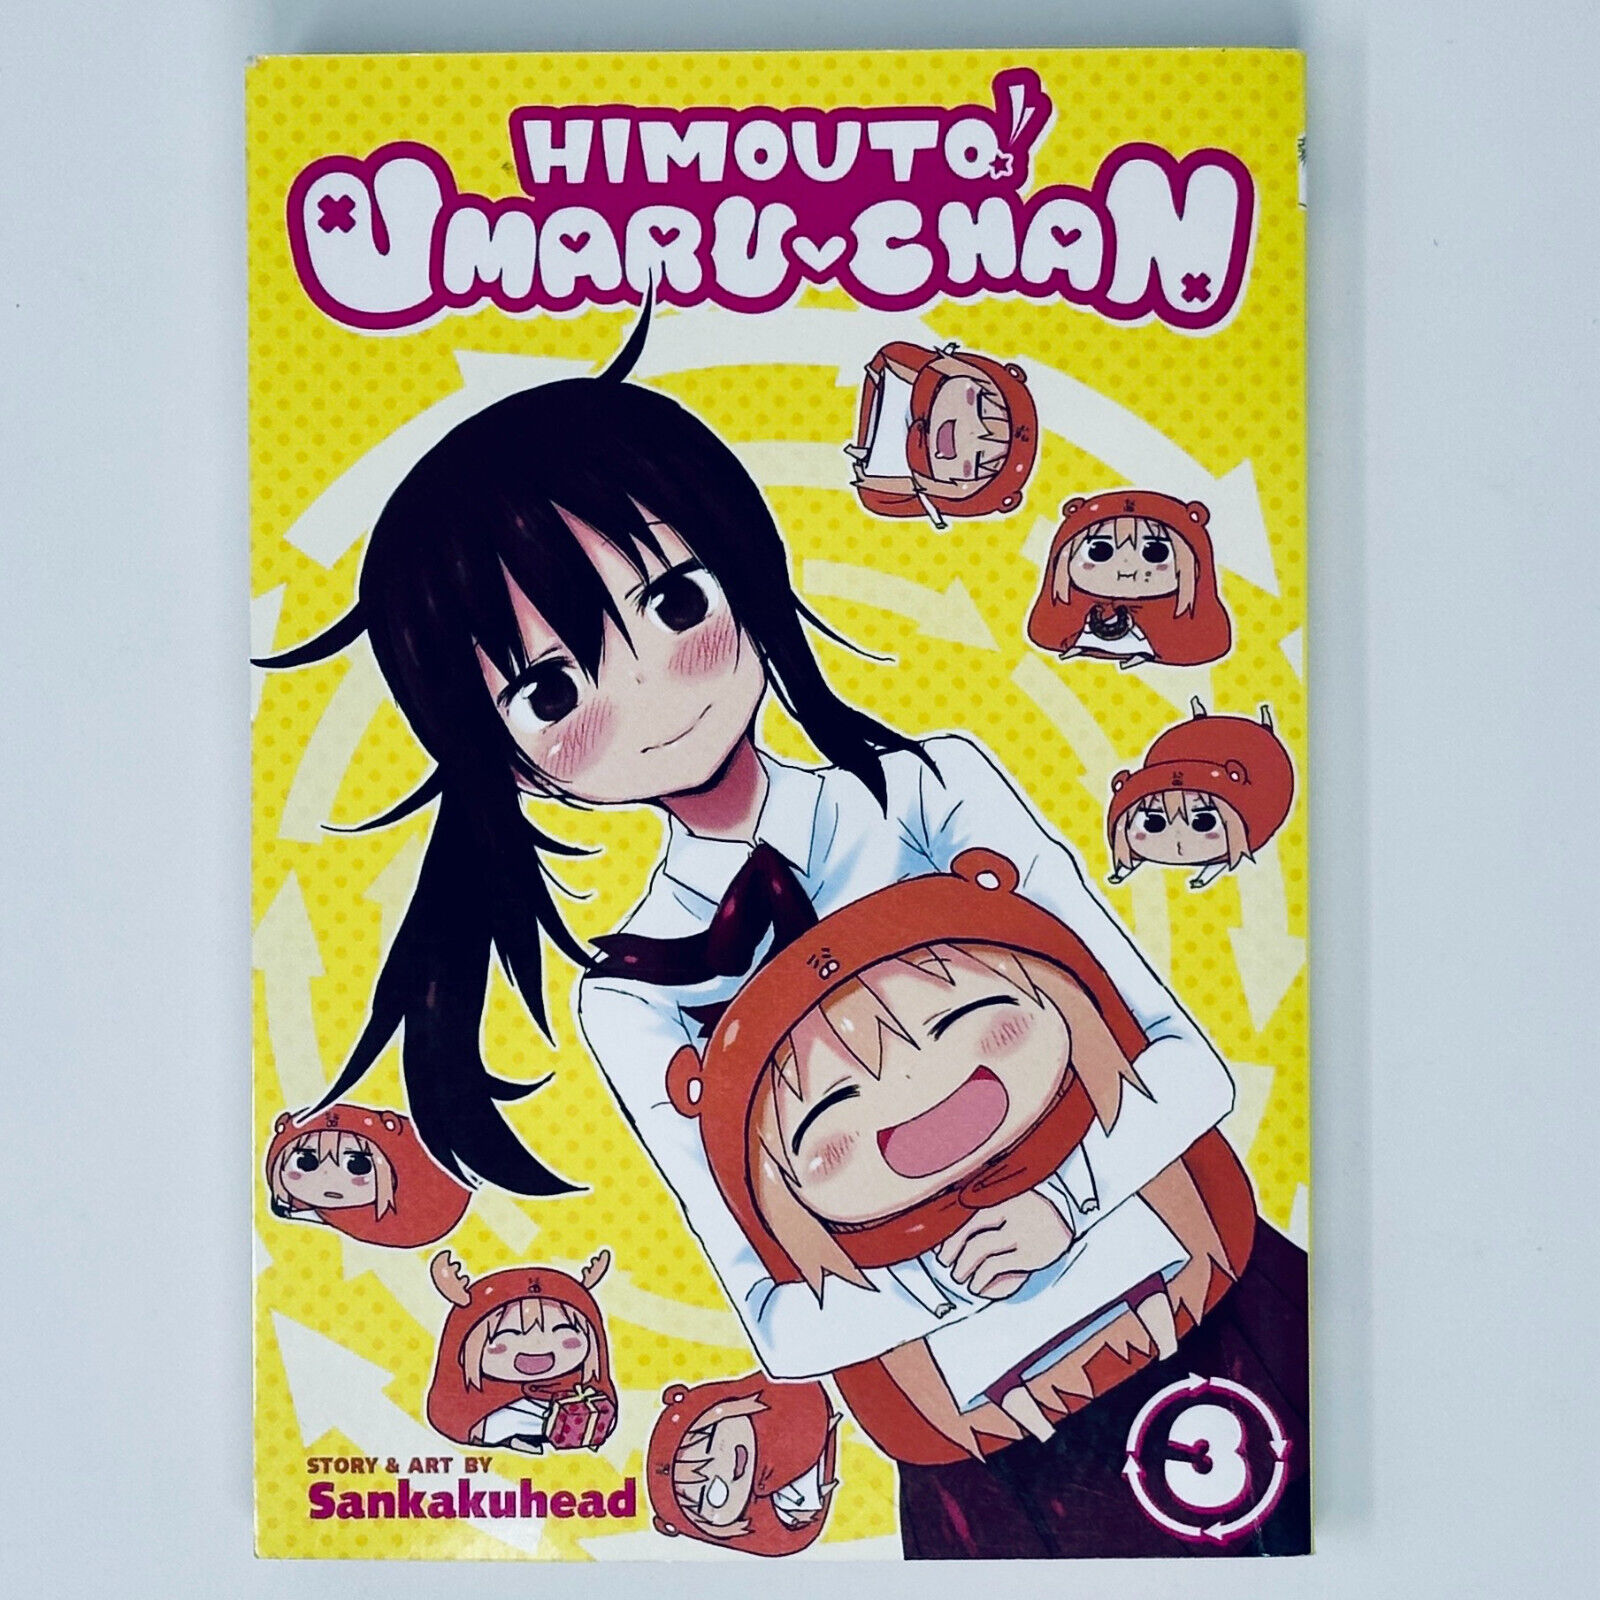 Himouto Umaru-Chan Vol. 3 Sankau Head Seven Seas 2018 First Printing